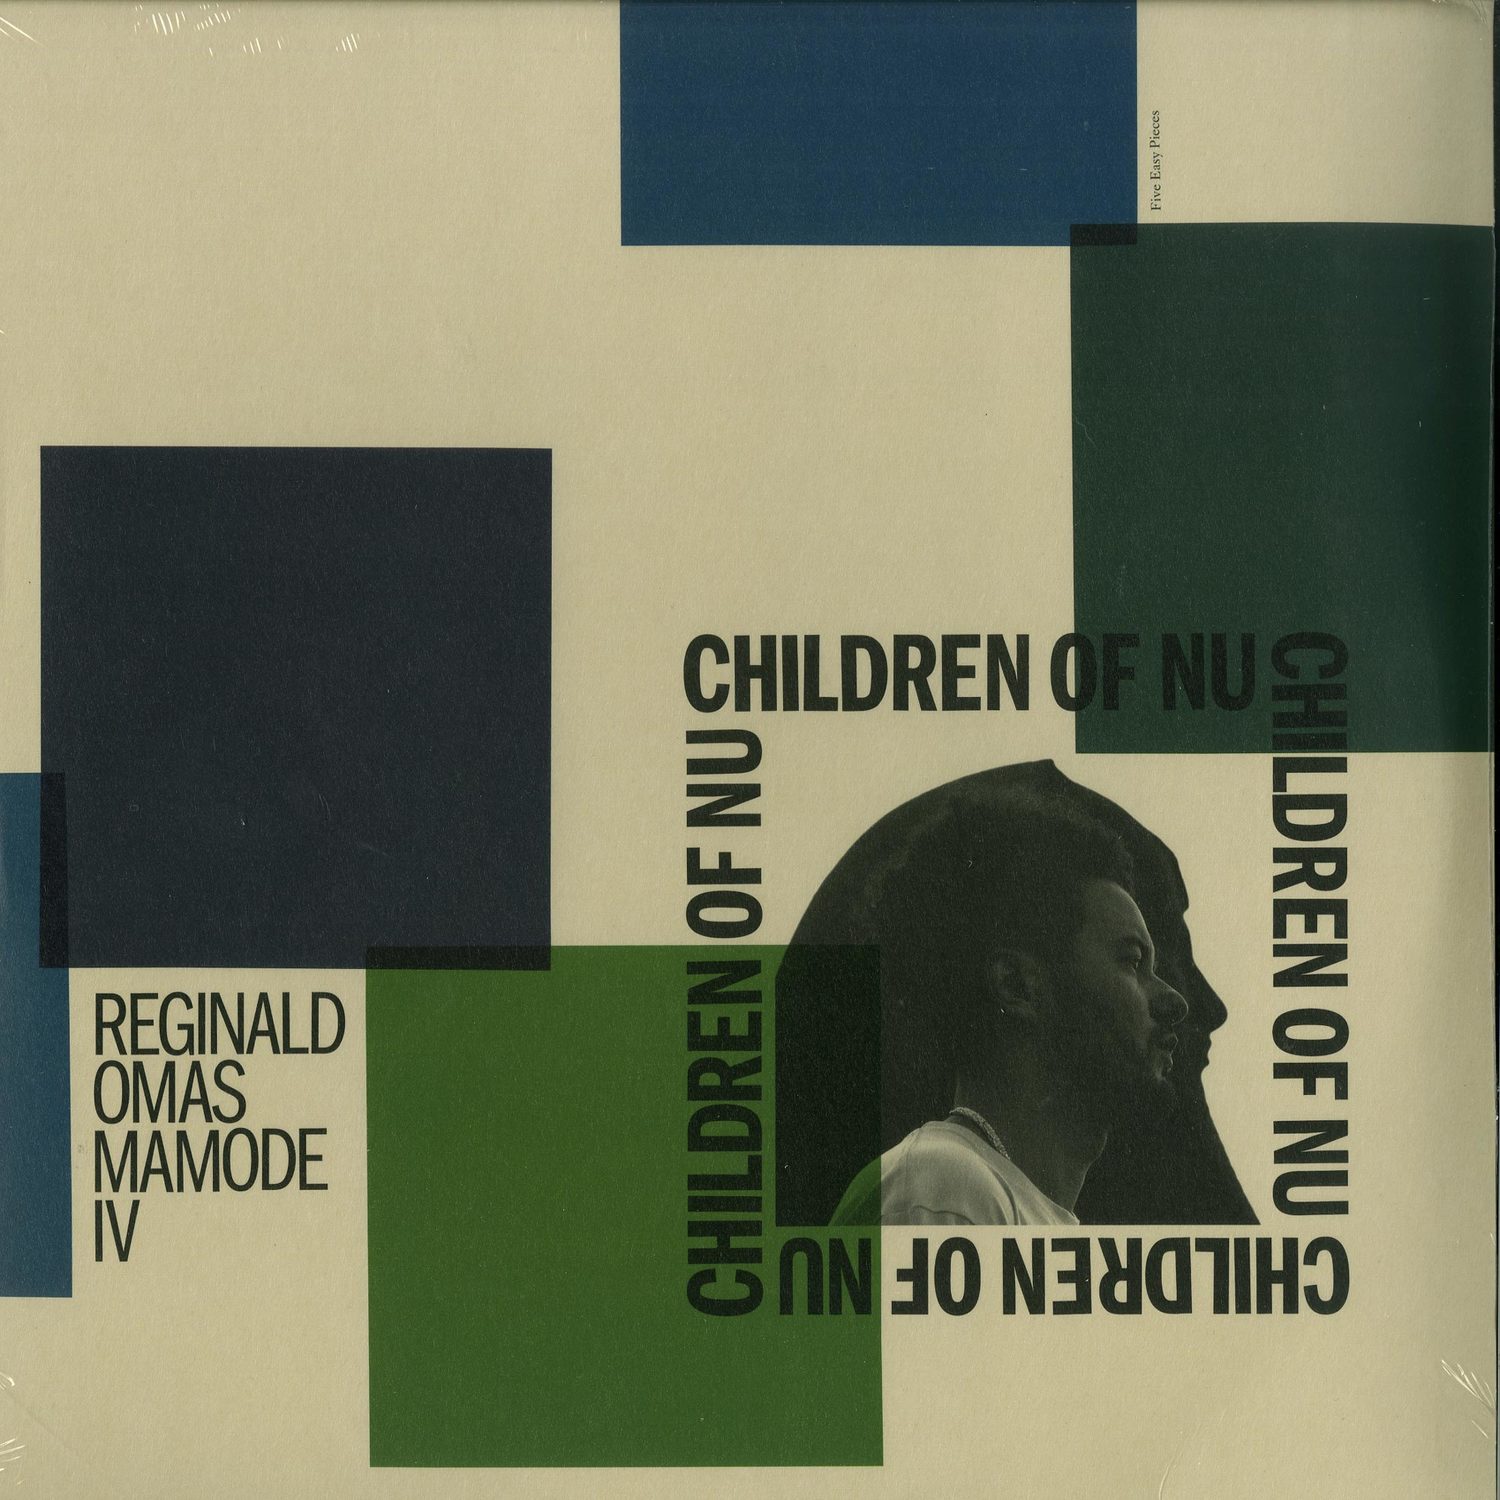 Reginald Omas Mamode IV - CHILDREN OF NU 